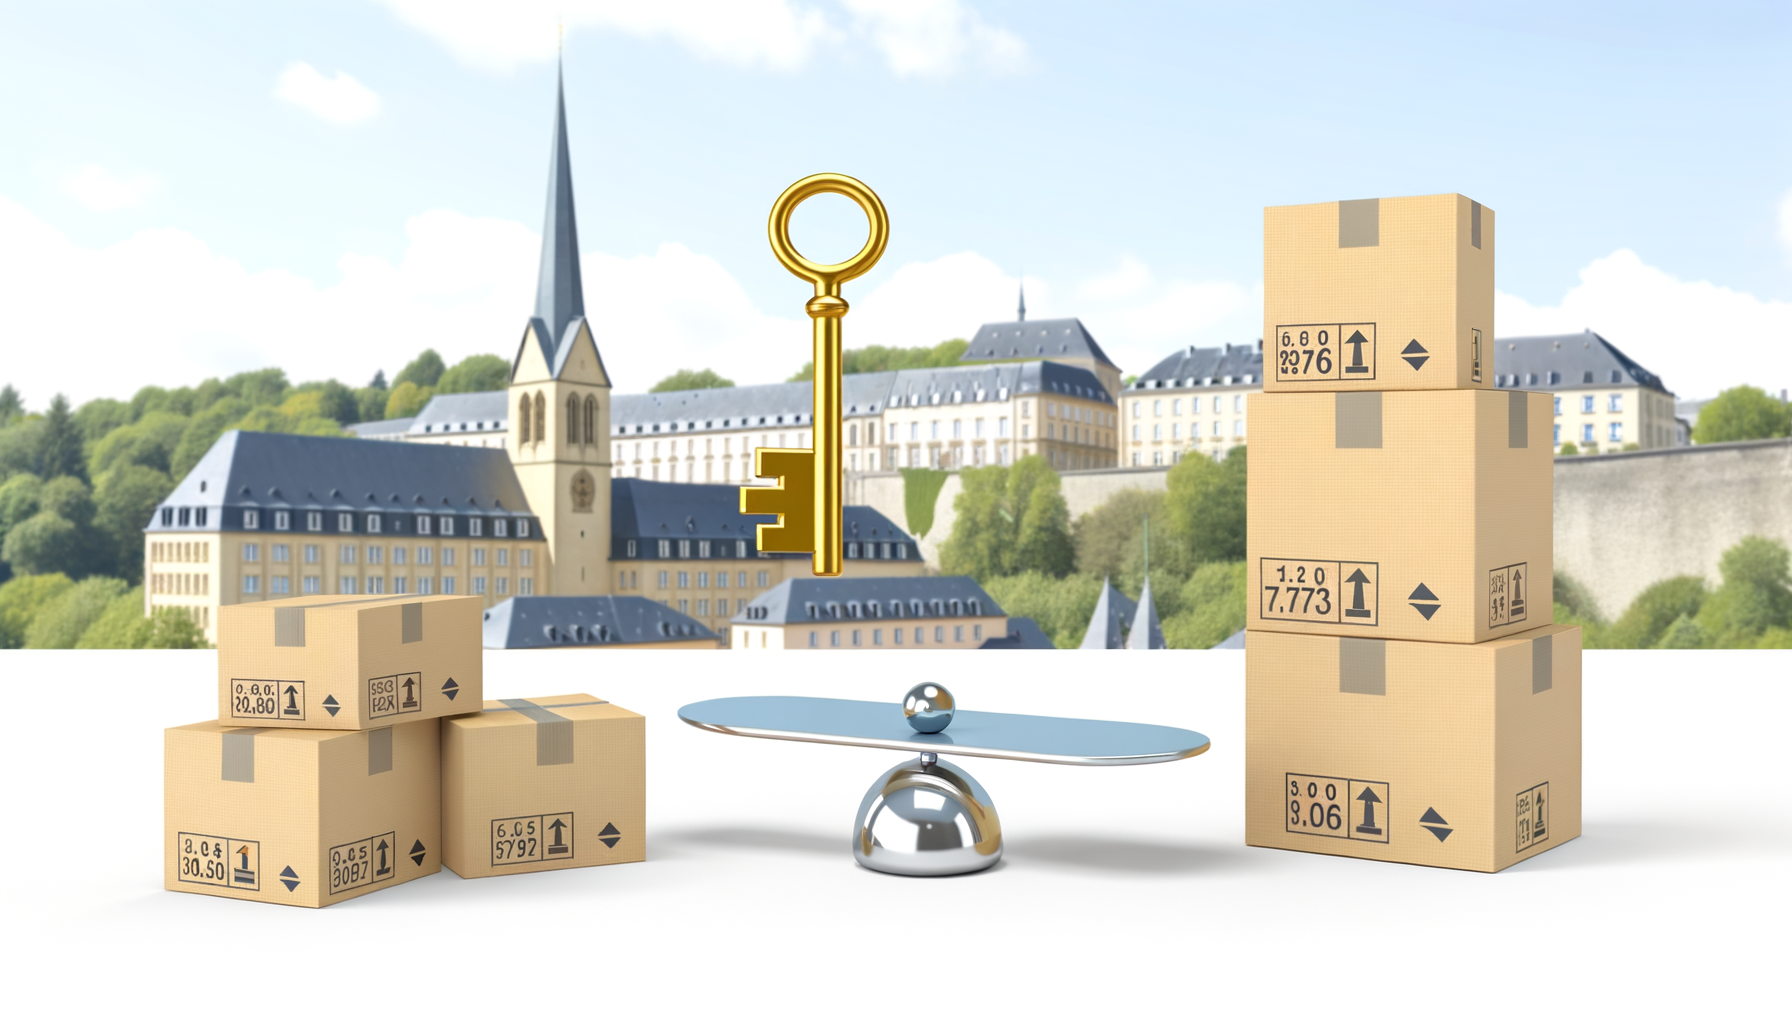 Planification efficace d'un déménagement sans soucis au Luxembourg montrant une liste détaillée des coûts et tarifs